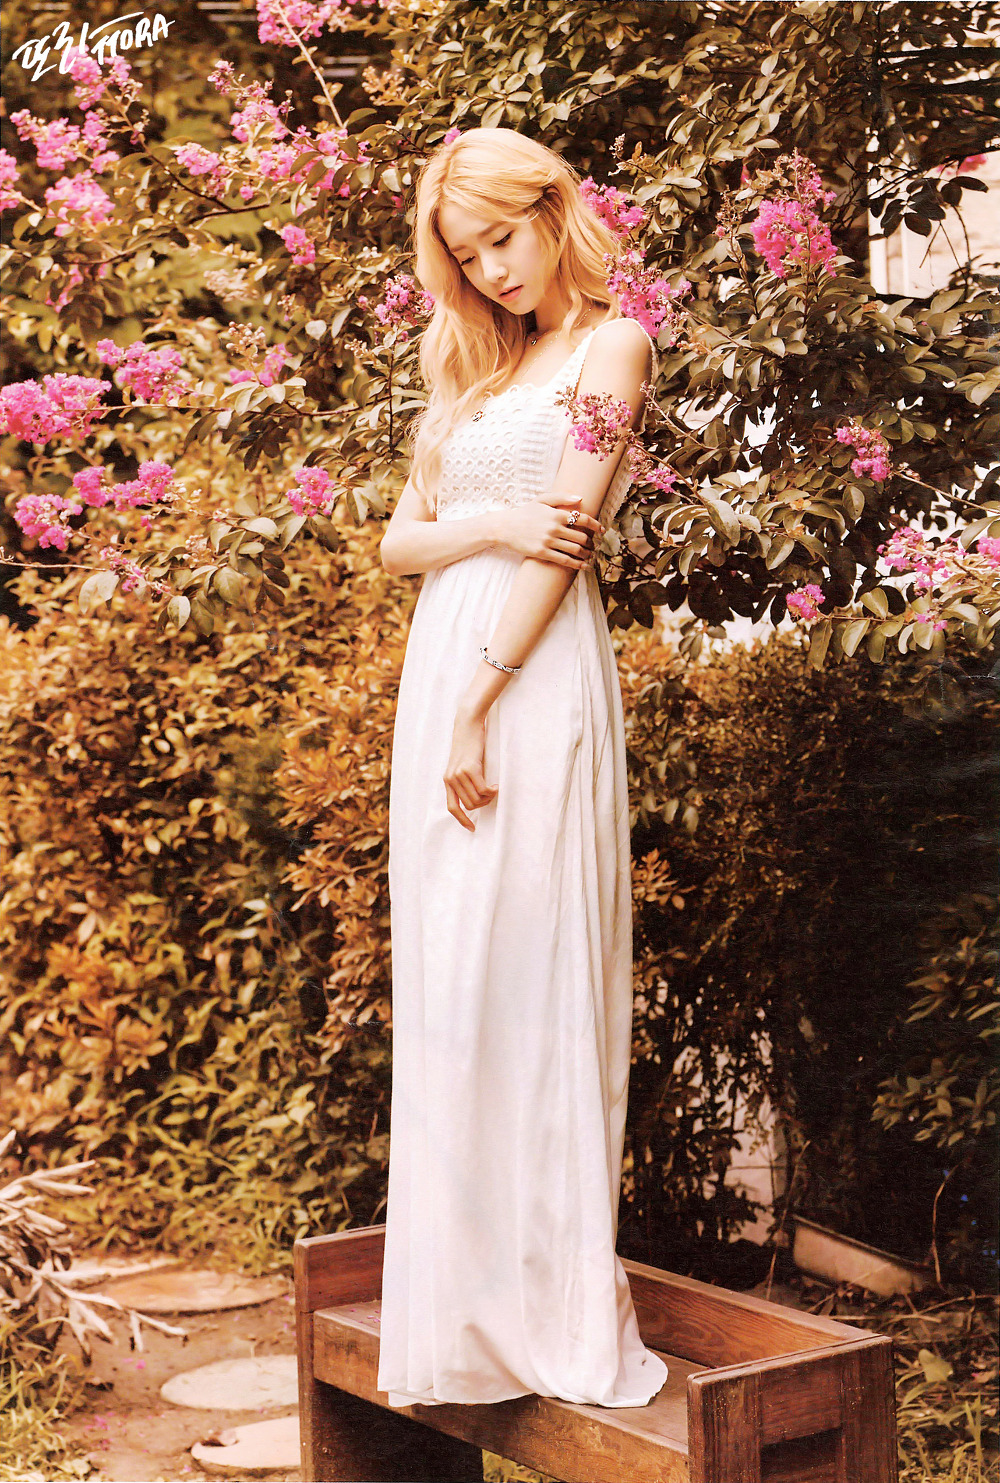 [PIC][05-08-2015]YoonA xuất hiện trên ấn phẩm tháng 9 của tạp chí "HIGH CUT" 23724F4355C88C7E219280